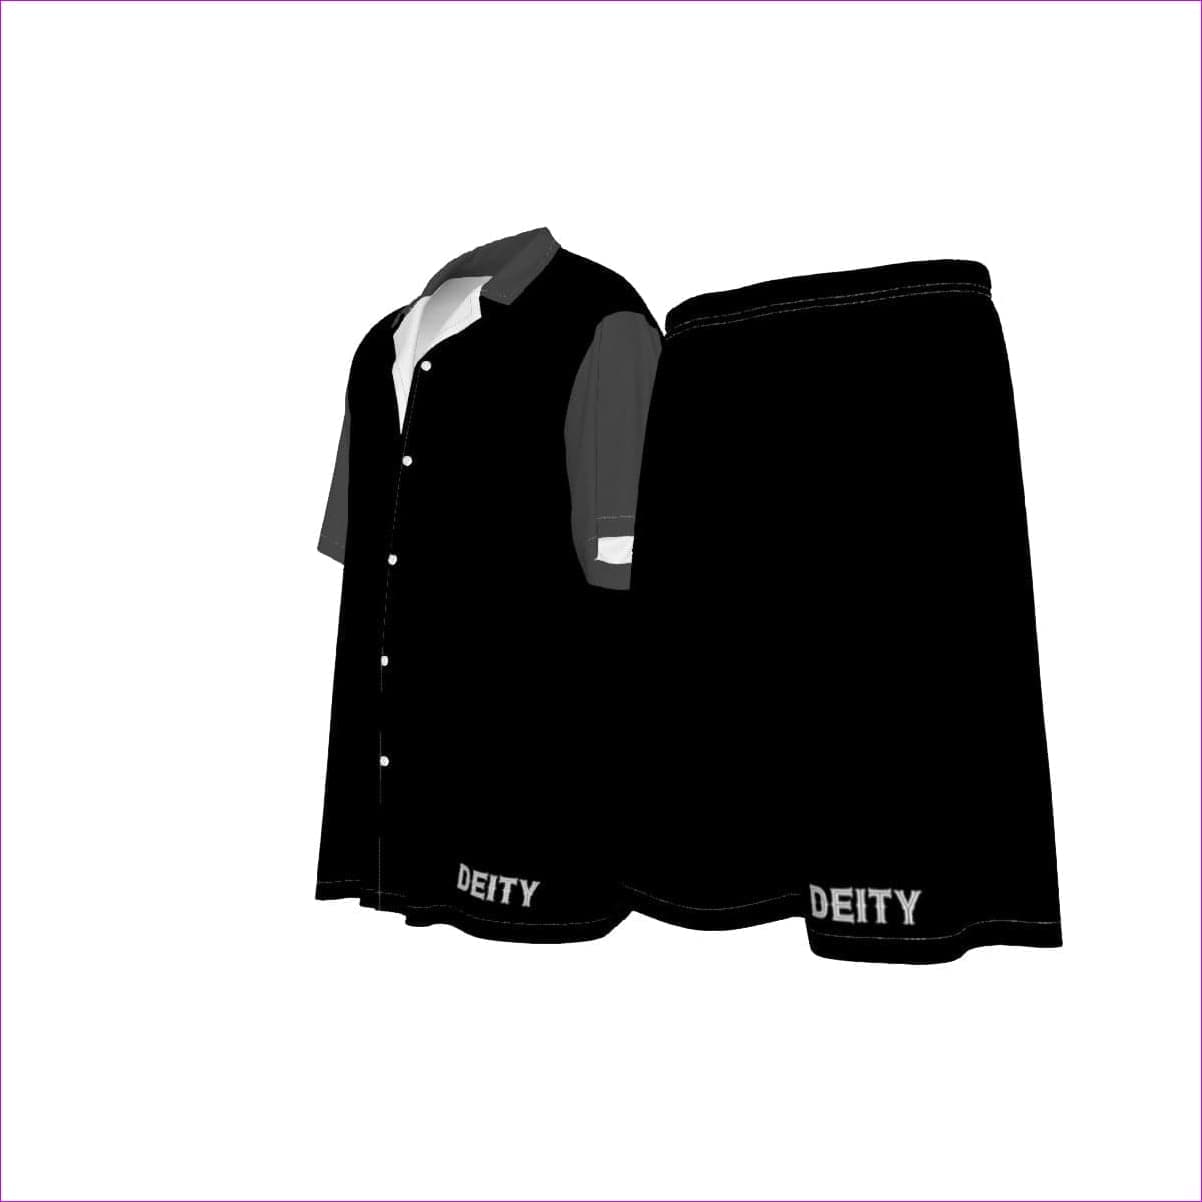 - Deity Men's Imitation Silk Short Set - mens short set at TFC&H Co.